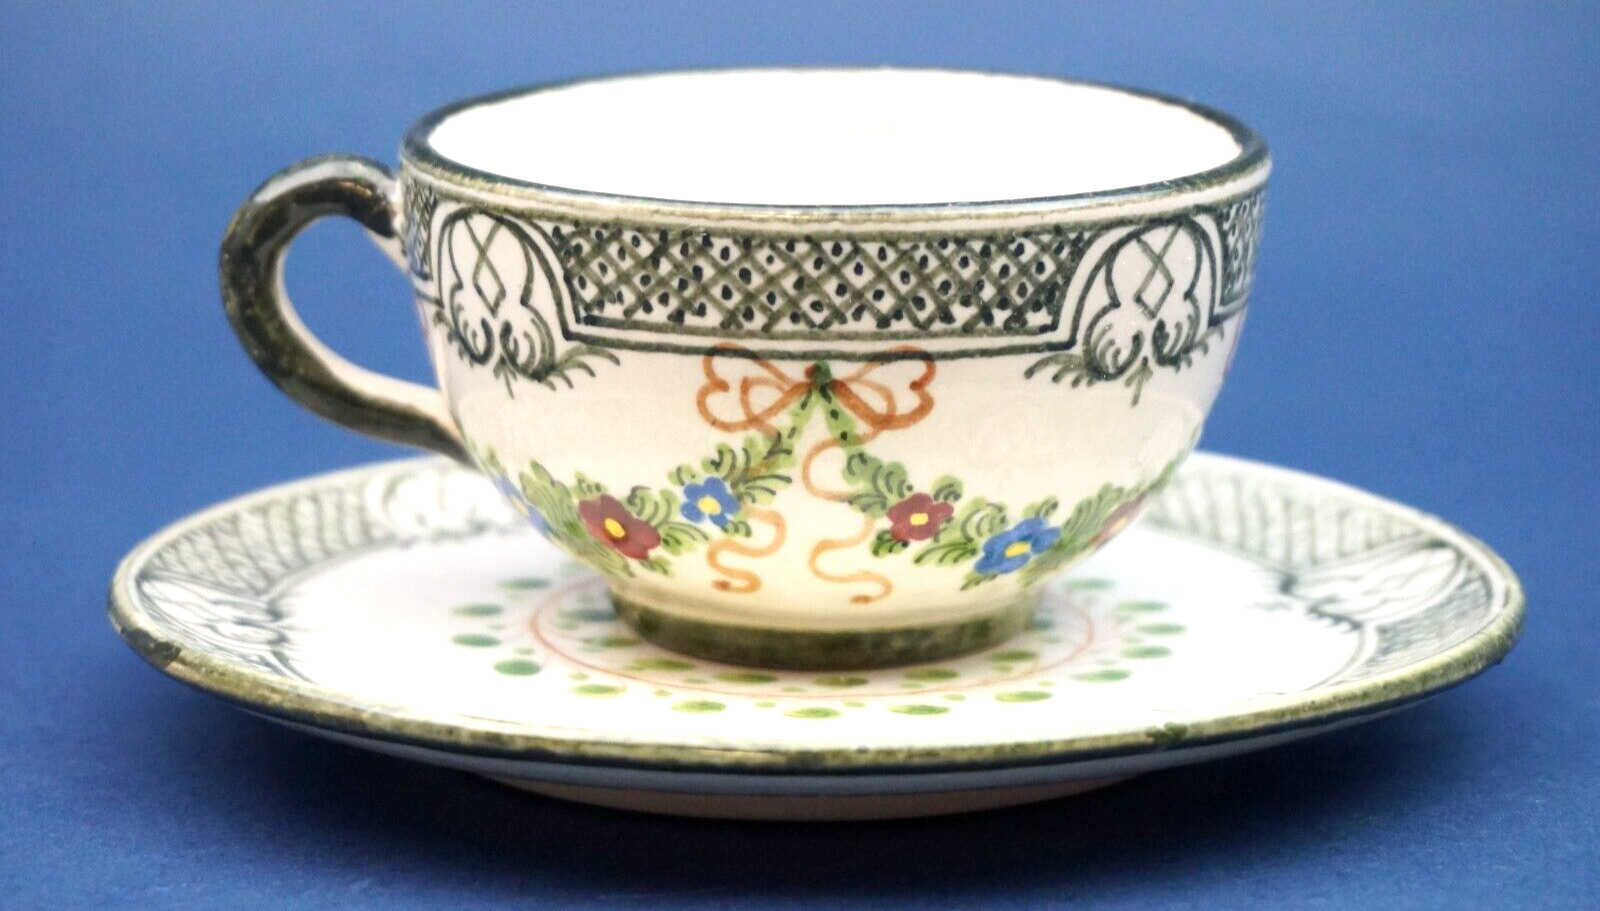 MINARDI BROTHERS Important ceramic cup, Melandri period Focaccia RARE ITALY